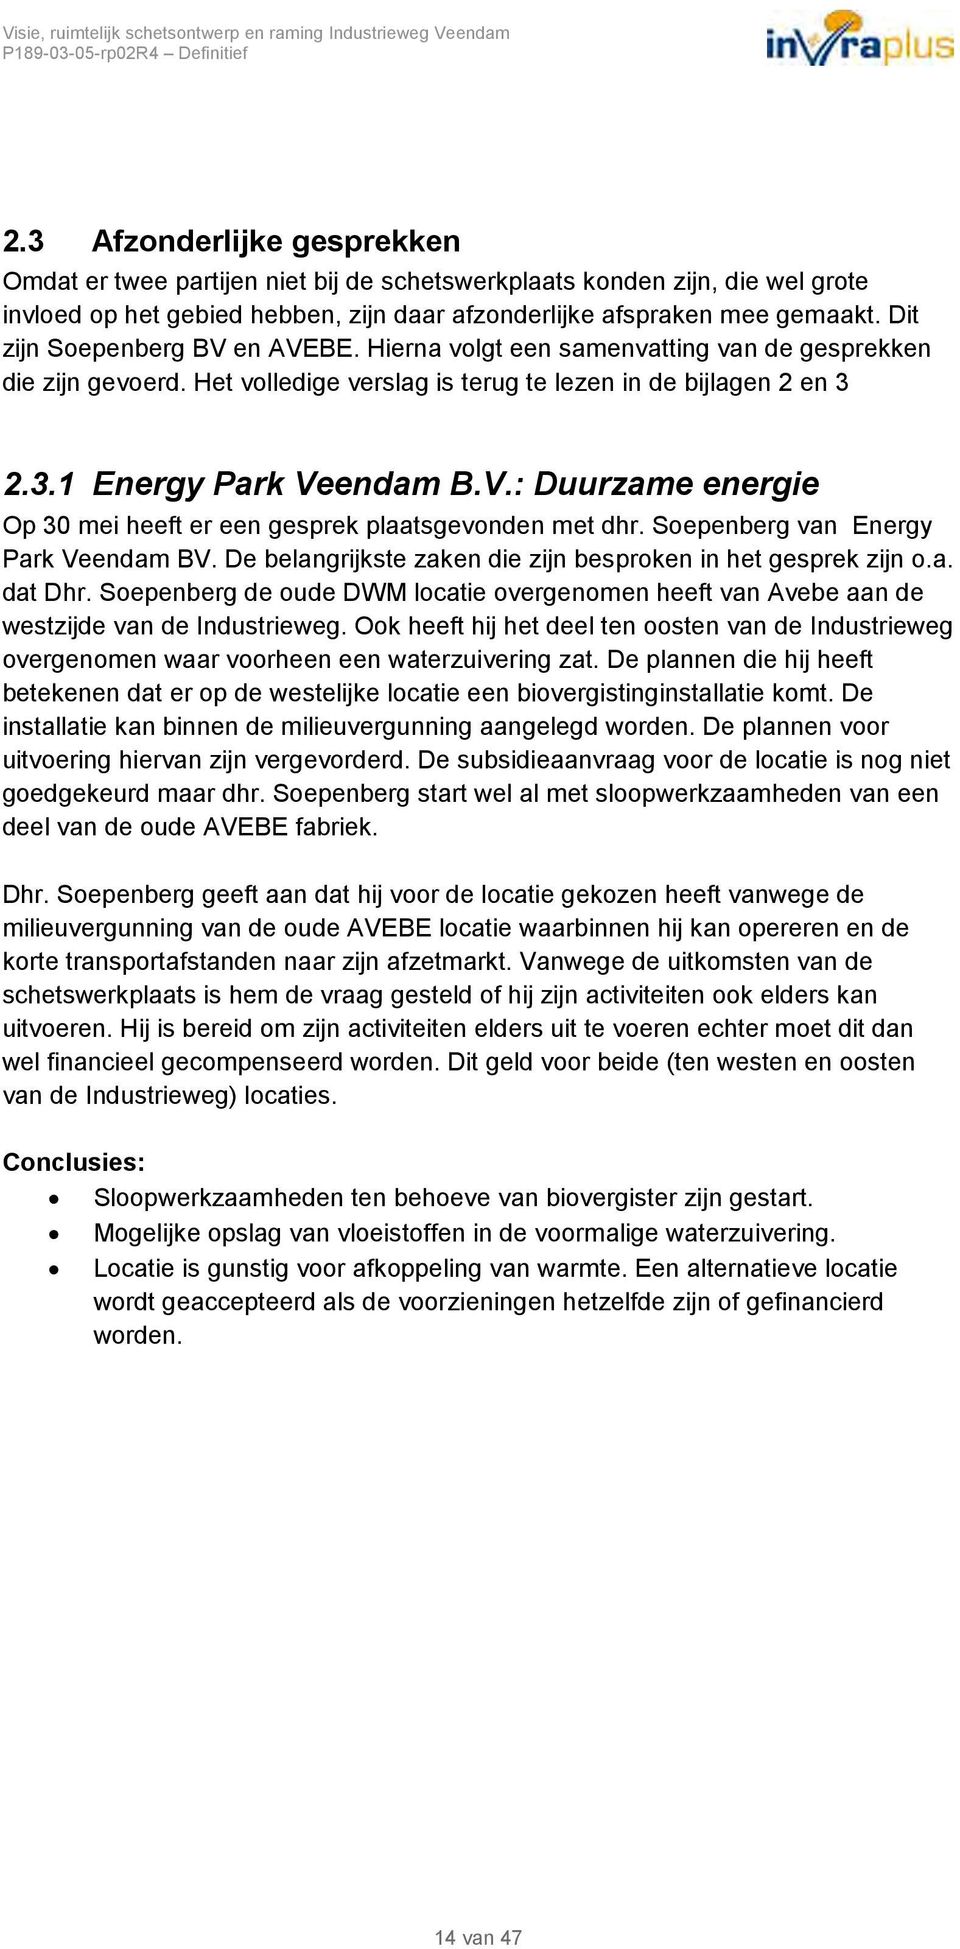 Soepenberg van Energy Park Veendam BV. De belangrijkste zaken die zijn besproken in het gesprek zijn o.a. dat Dhr.